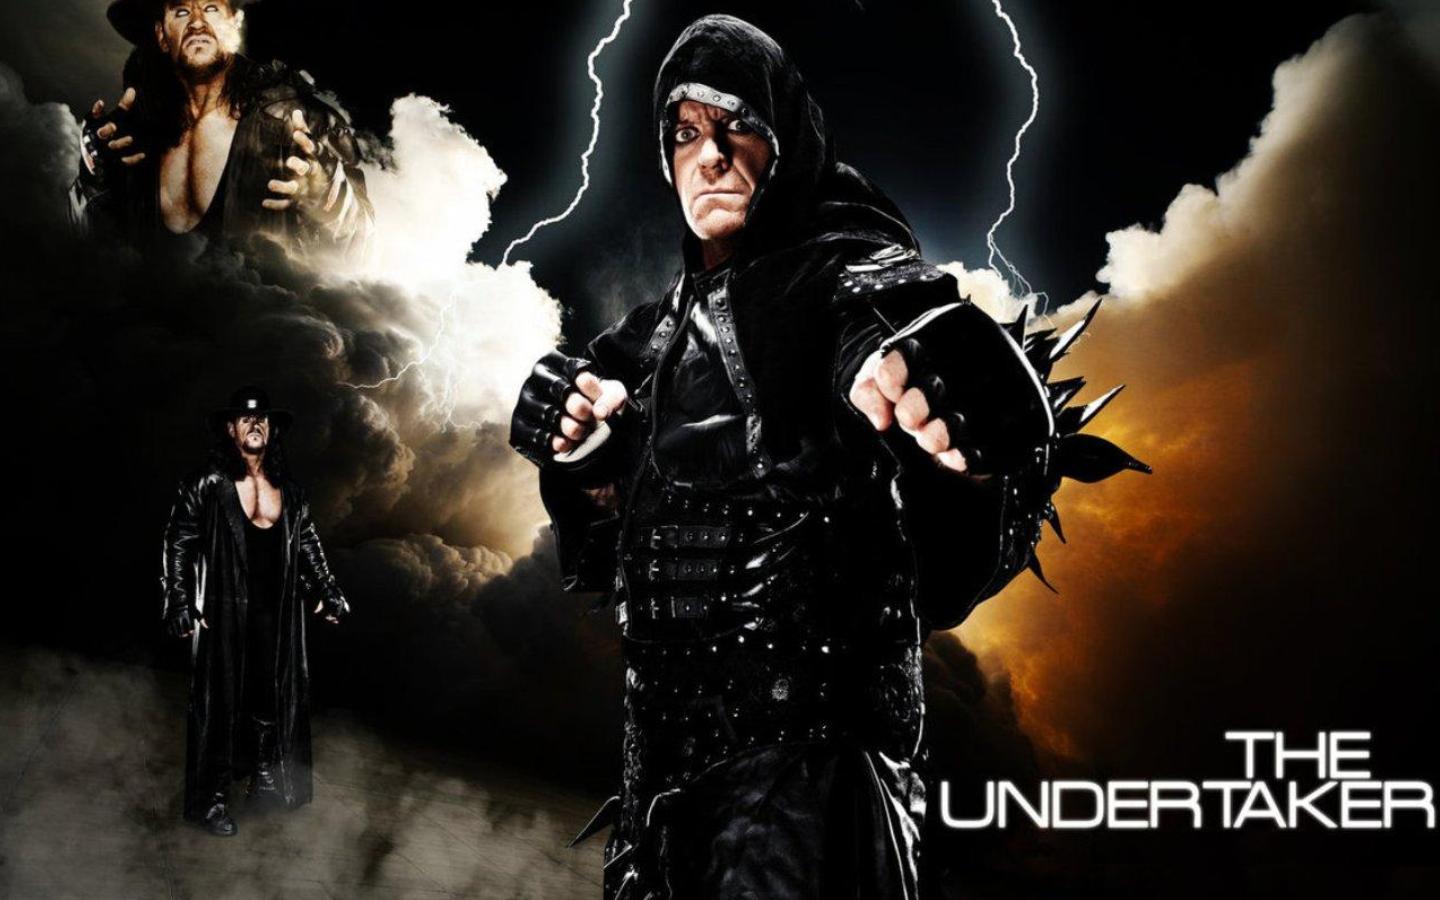 Wwe Superstar Undertaker HD Wallpaper And New Photos